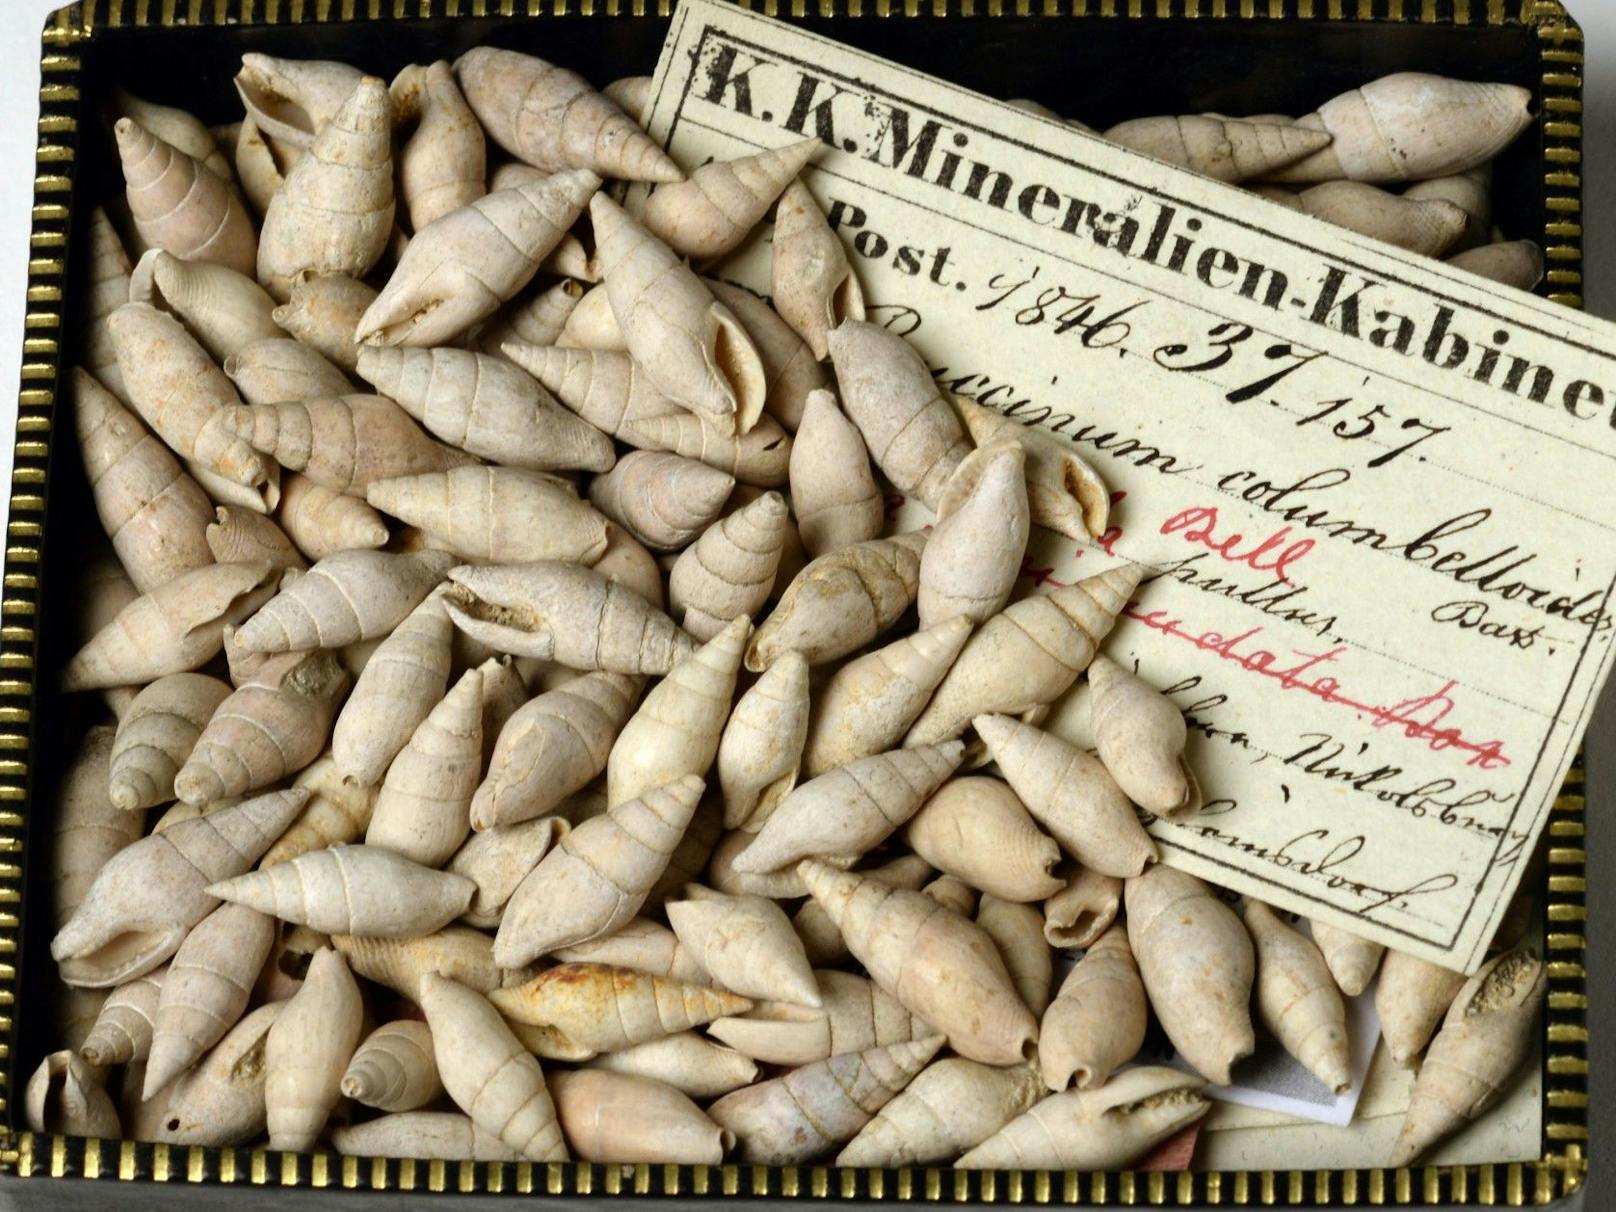 Das Naturhistorische Museum hat einen neu entdeckte Schneckenart nach der Stadt Wien benannt. Die Täubchenschnecke erhielt den Namen "<em>Mitrella viennensis"</em> , gefunden wurde sie noch mit historischem Etikett und veralteter Bezeichnung markiert.